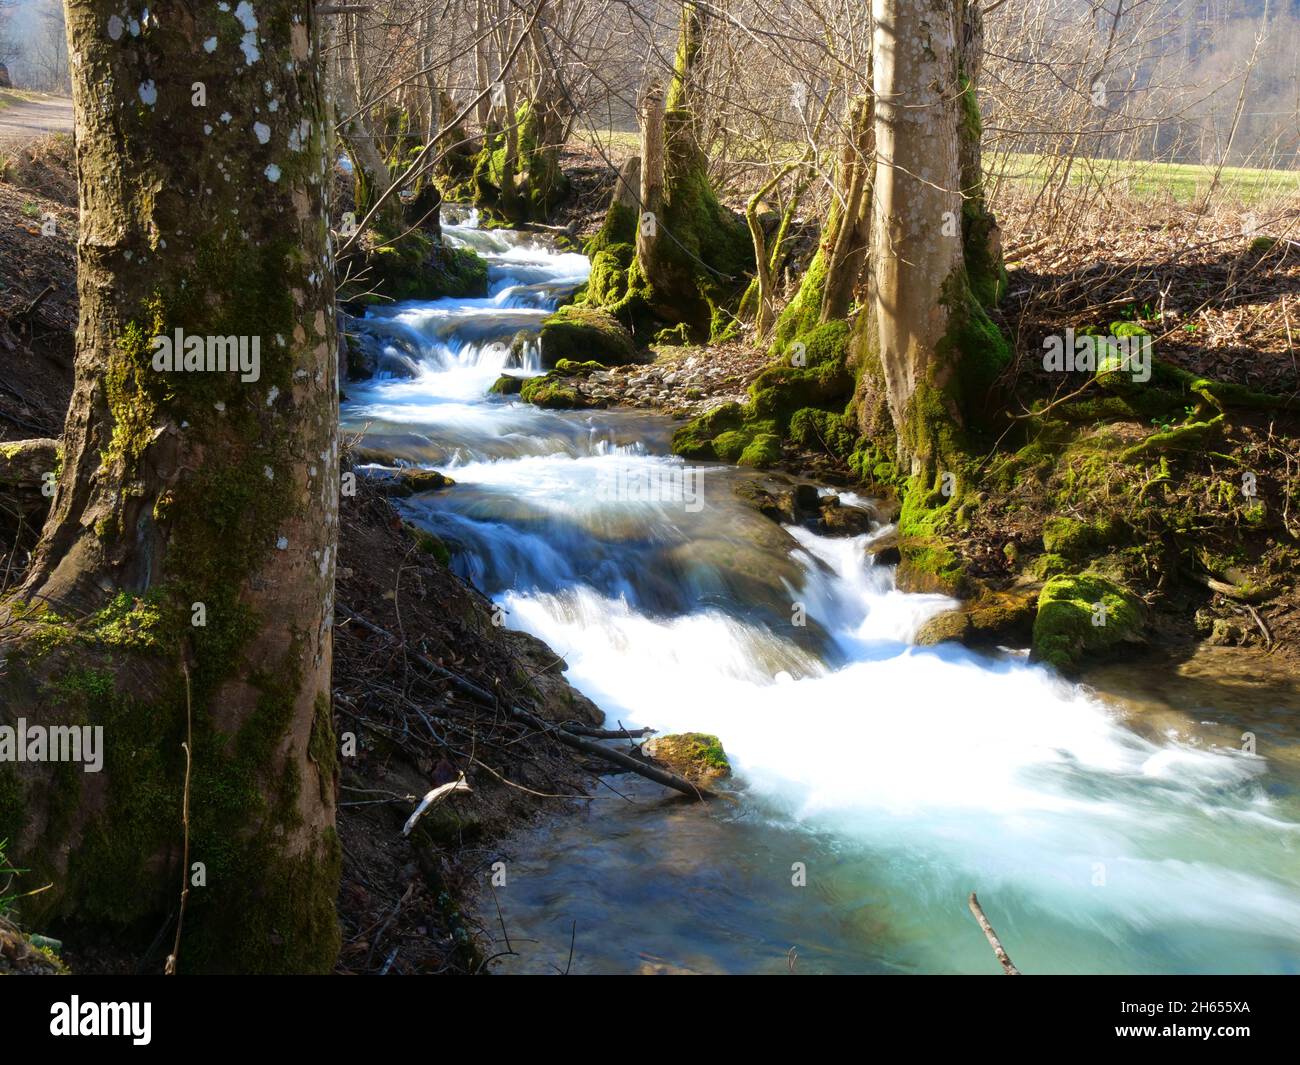 Bad Urach, Germany: River stream in spring Stock Photo